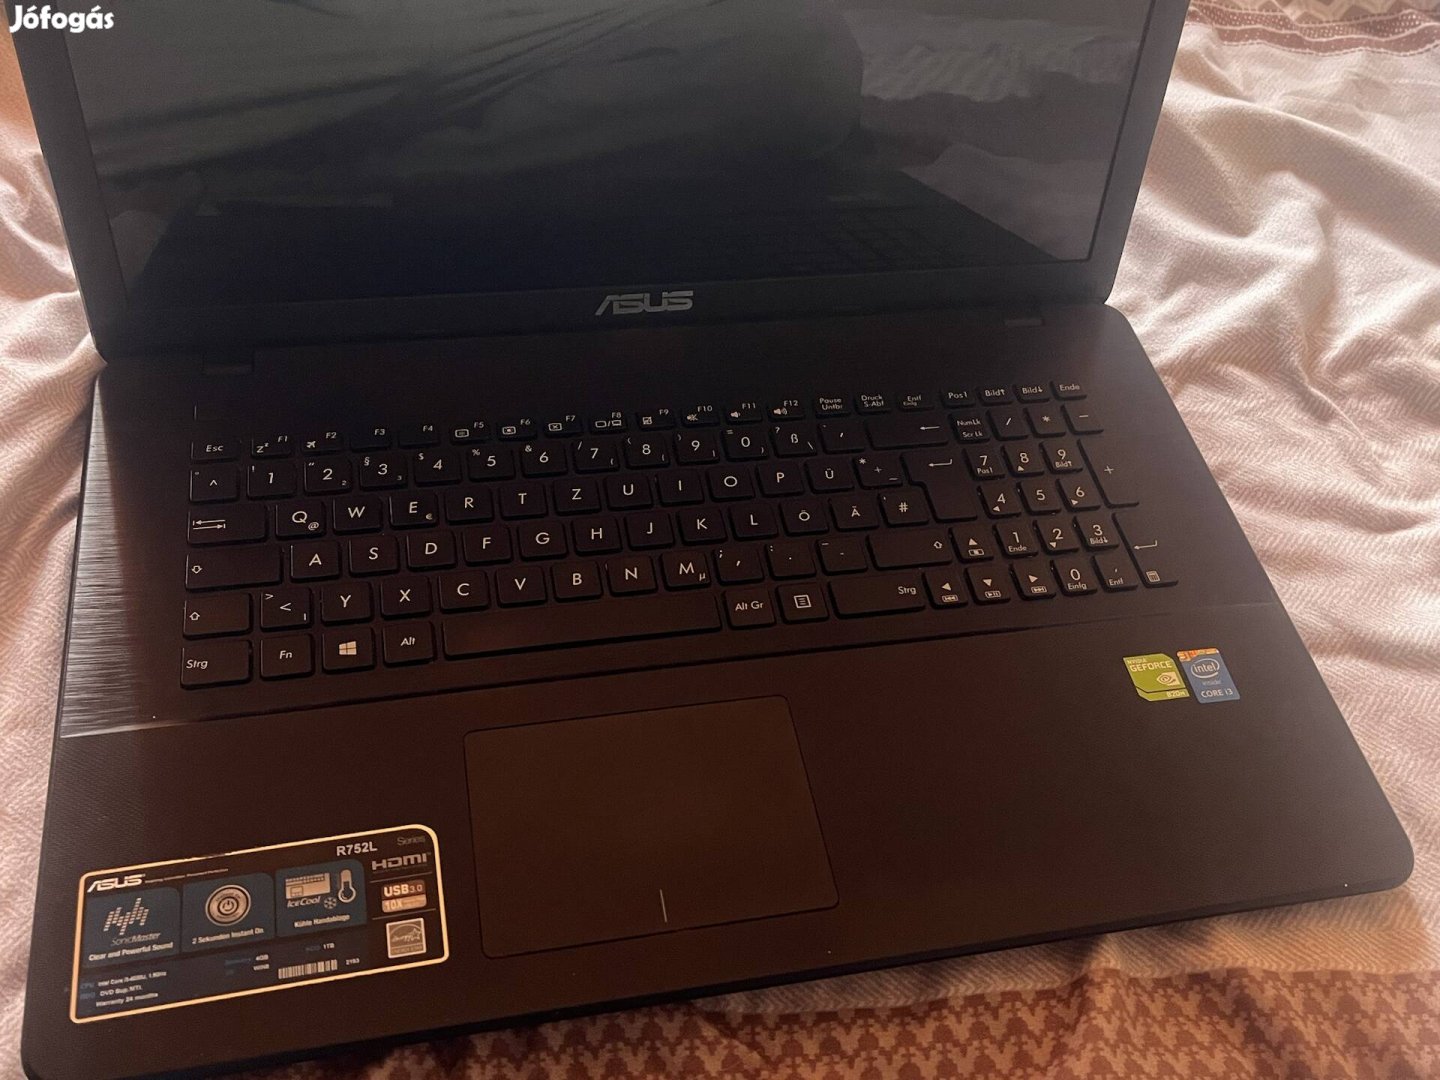 Asus R752l tipusu laptop eladó!